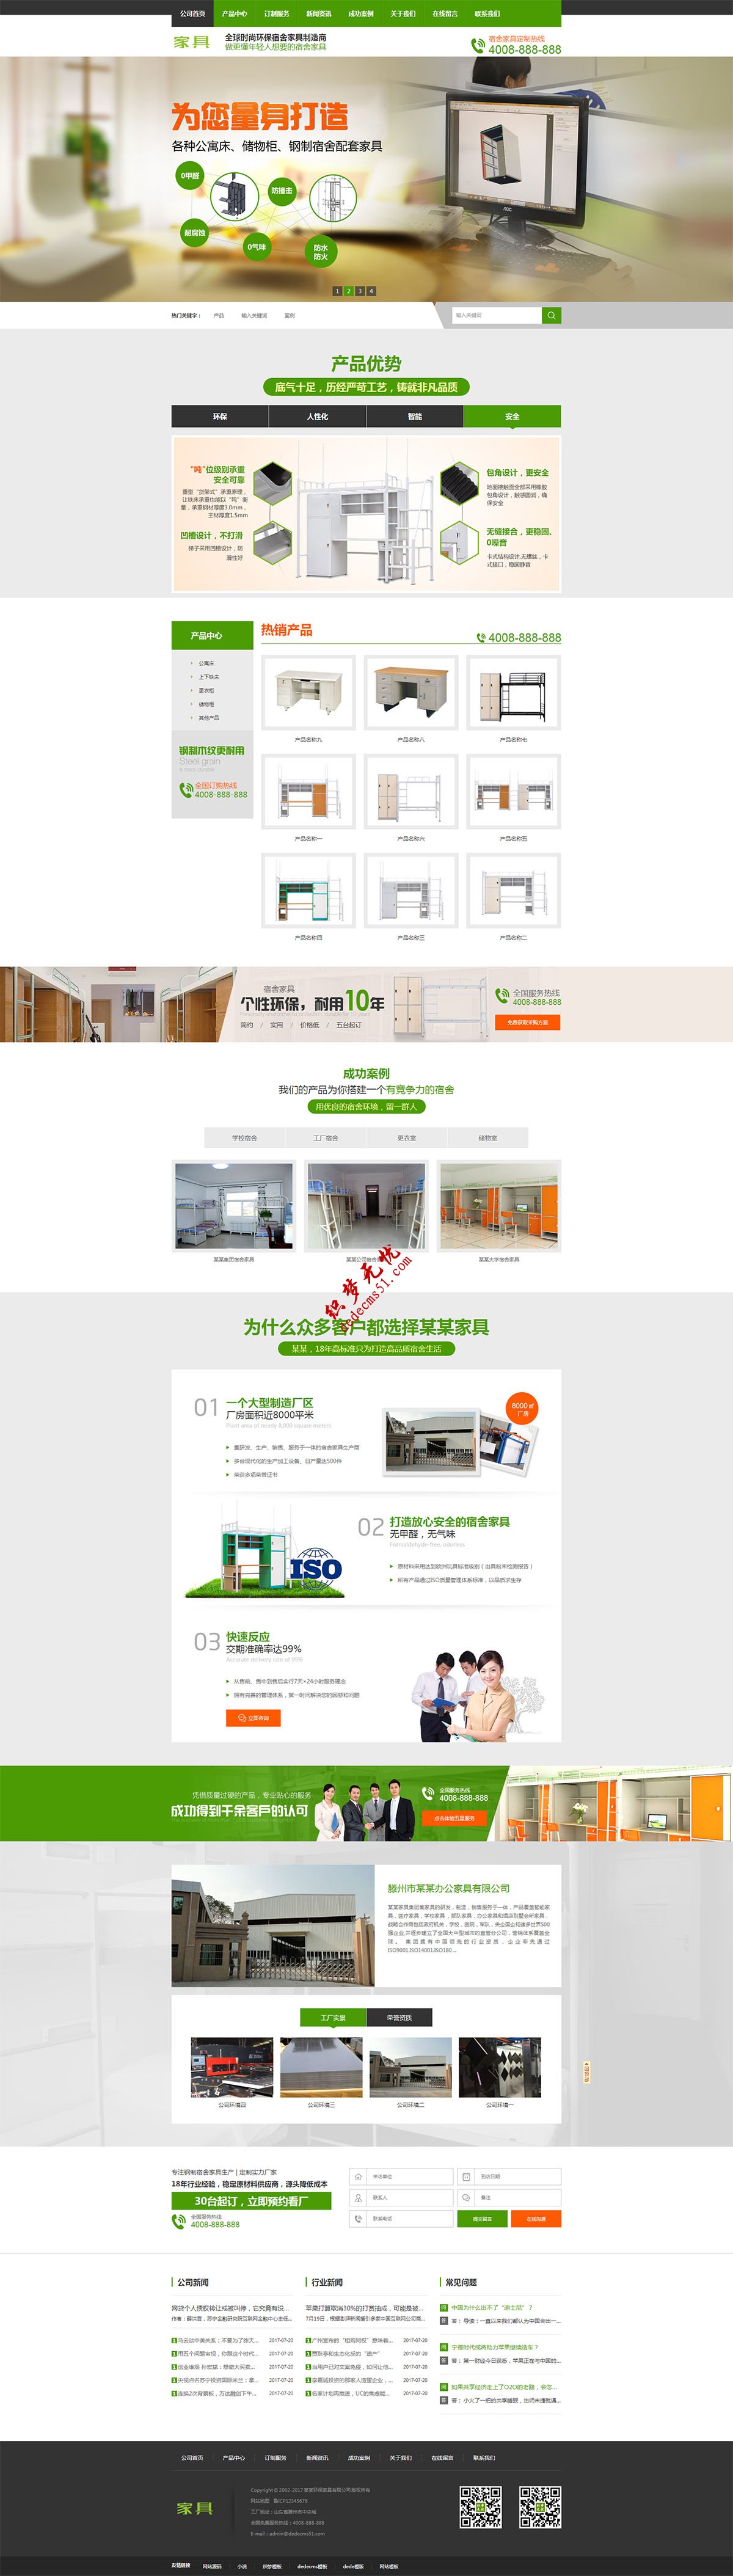 绿色营销型家具书桌厨具办公桌家具销售网站织梦模板下载(带手机)